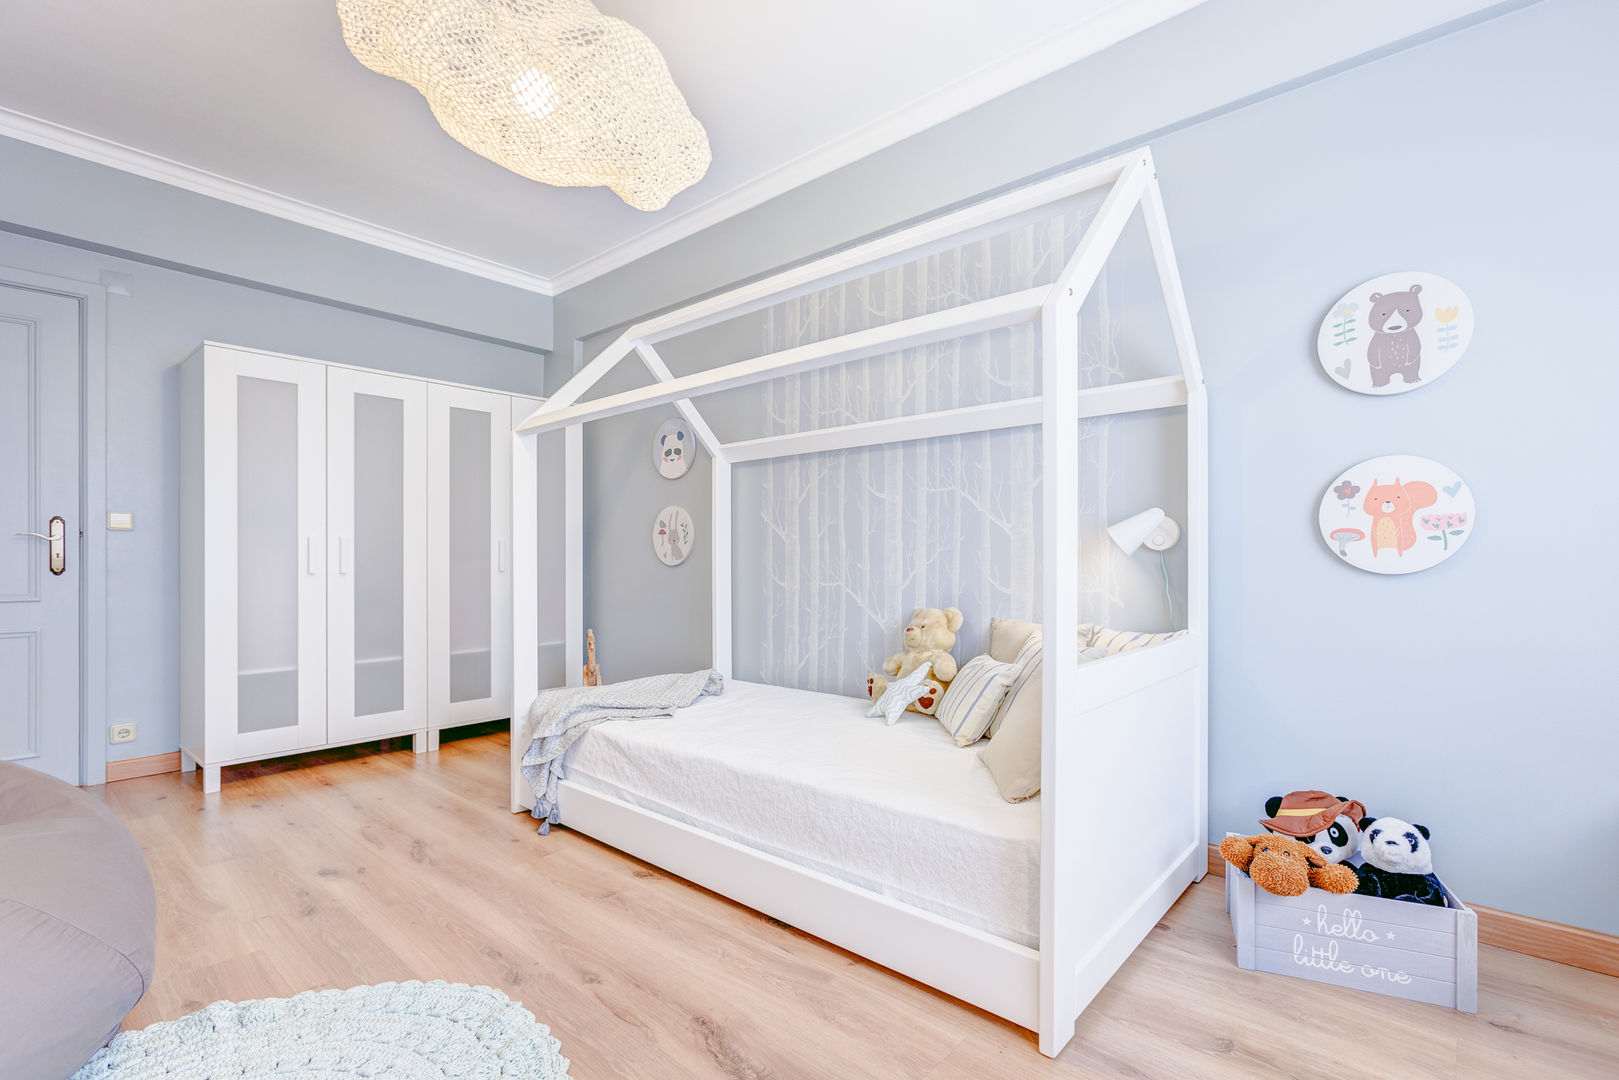 Querido Mudei a Casa – Ep 2615 Santiago | Interior Design Studio Quarto infantil escandinavo